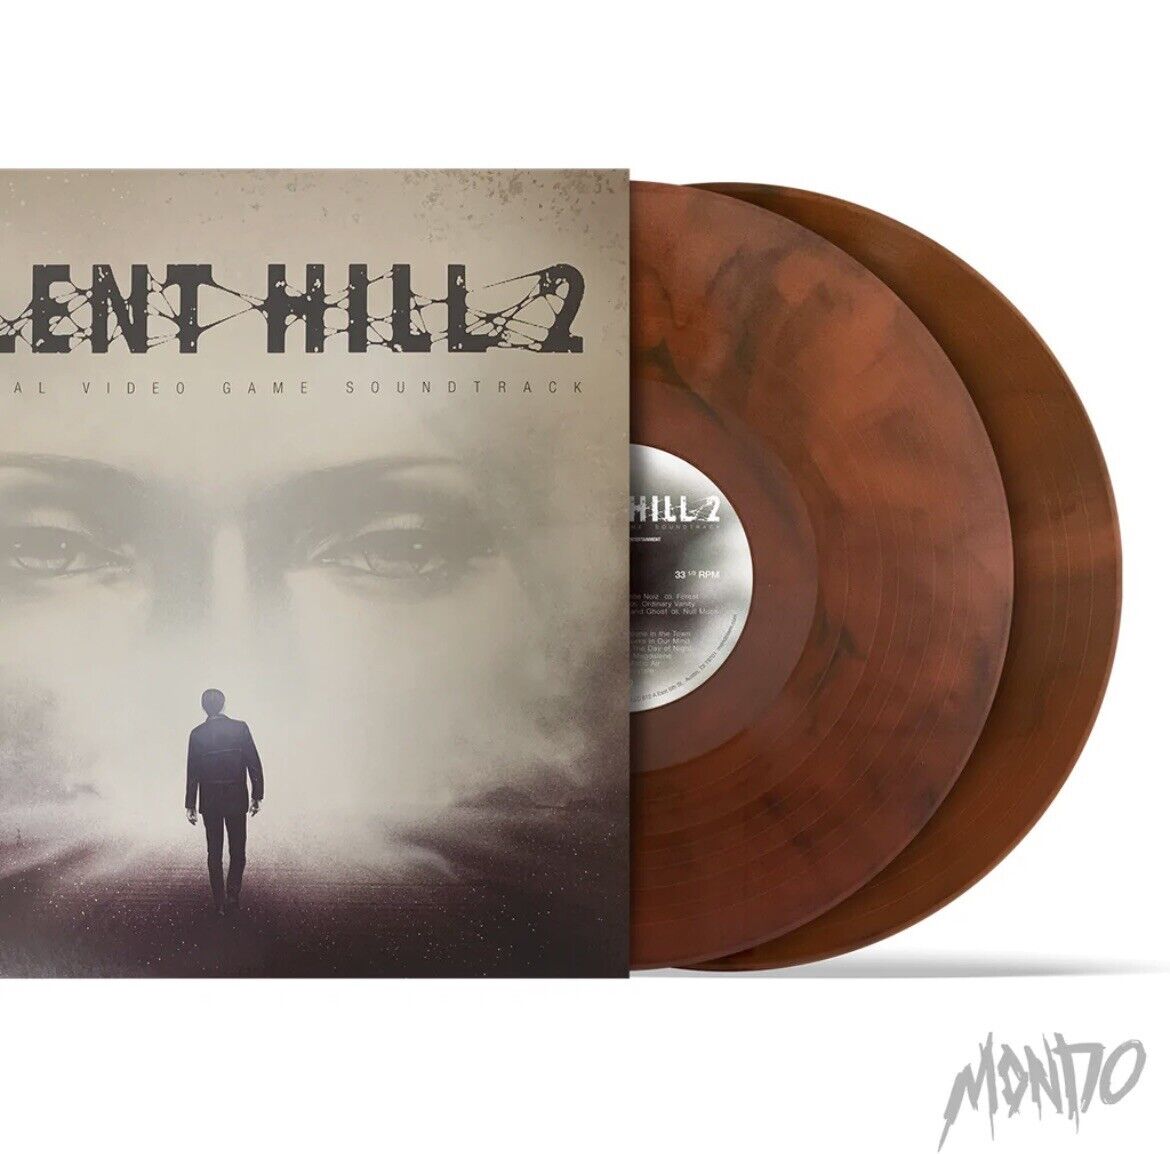 Silent Hill 2 Soundtrack LP サントラ レコード DO-